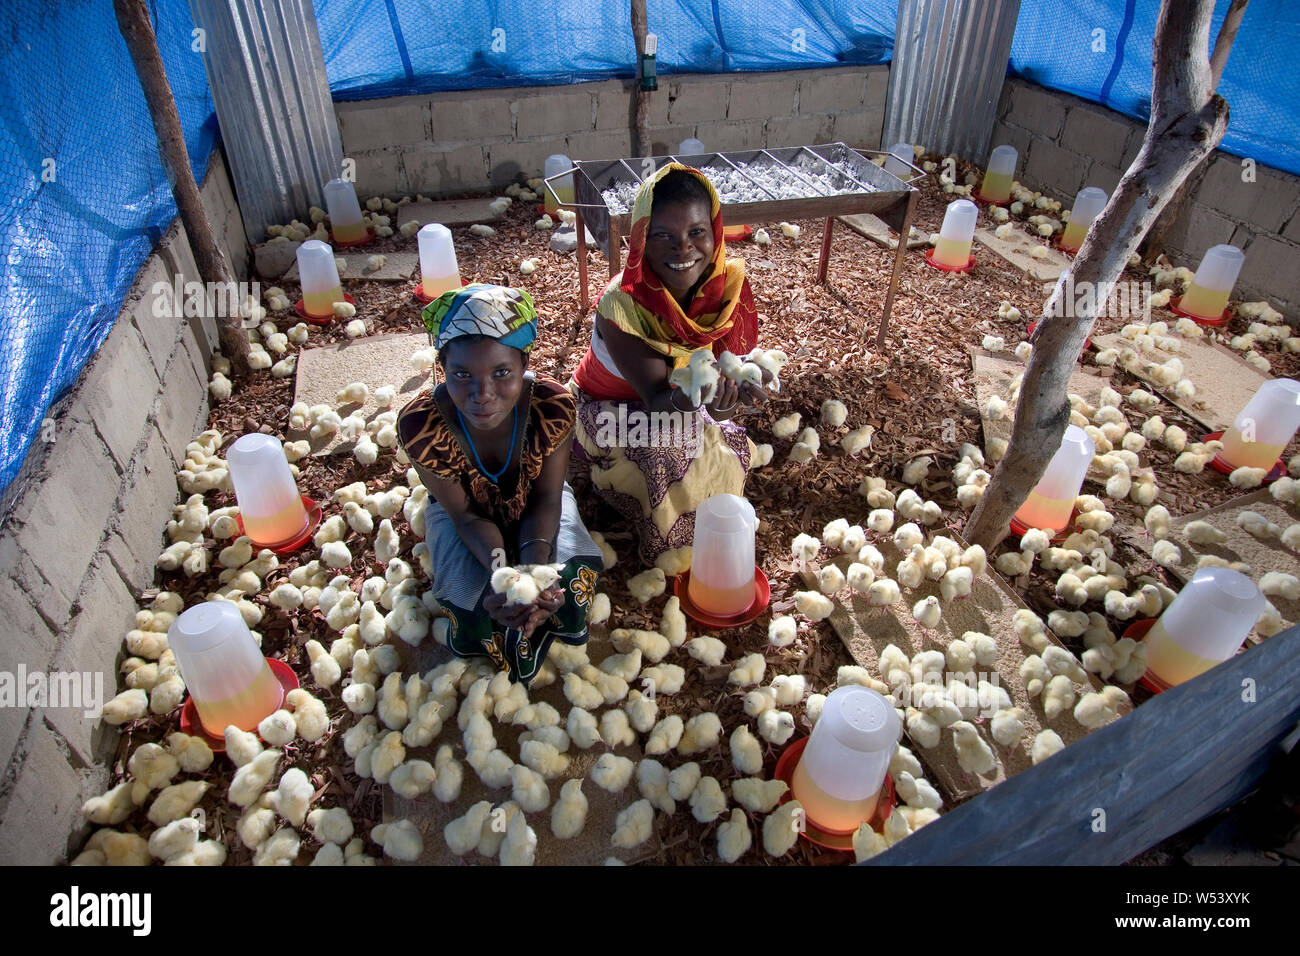 Progetto di produzione locale di uova e pollo della comunità del villaggio, inizialmente sostenuto dalla società mineraria. Produce approvvigionamenti miniera & genera reddito per coltivatori. Foto Stock